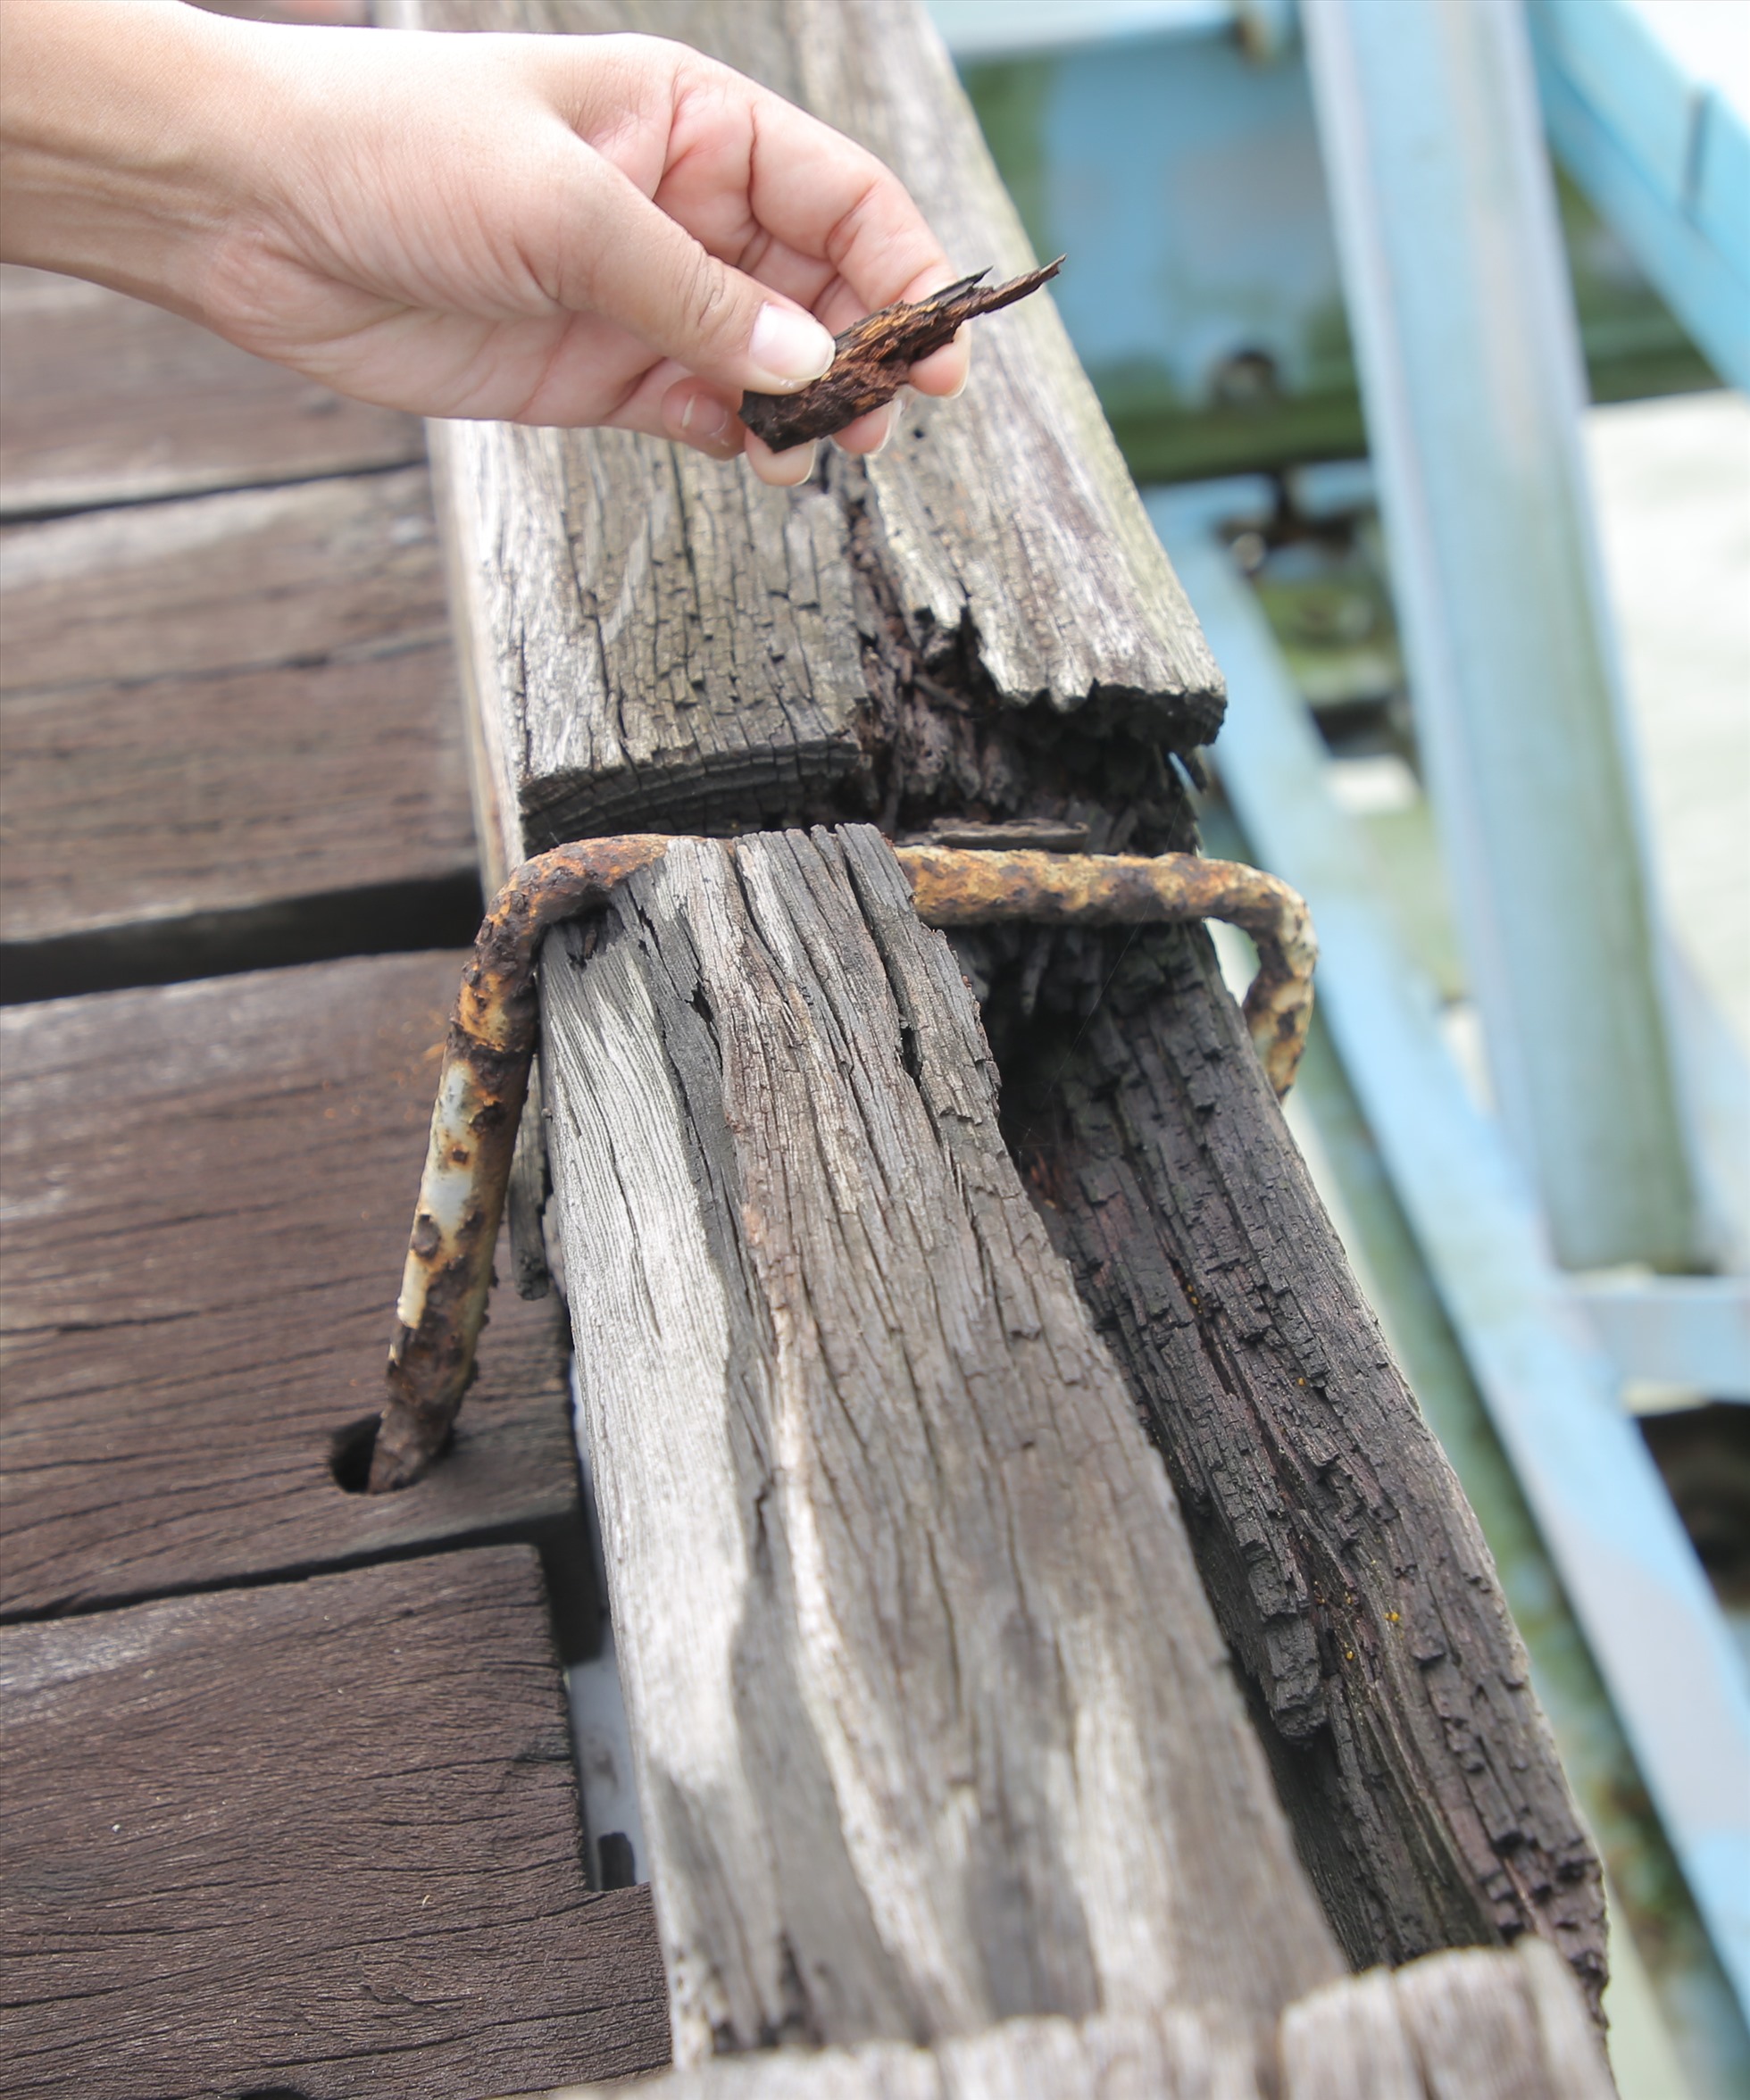 Các thanh gỗ để cố định ván trên mặt cầu cũng bị mục ruỗng.